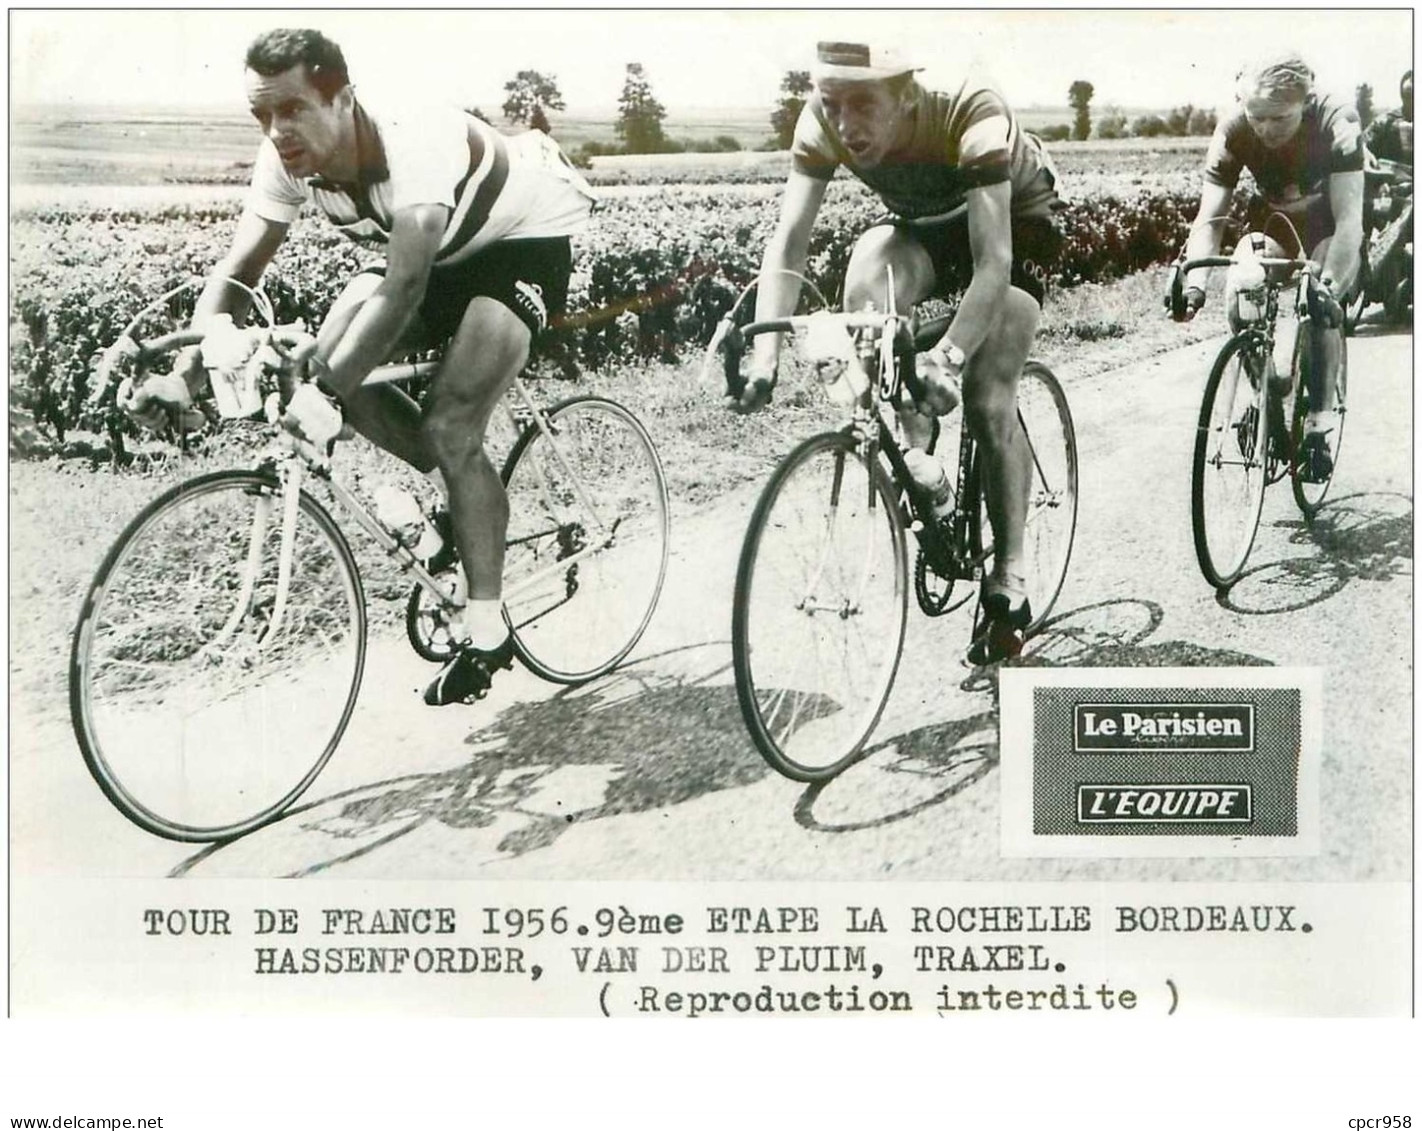 PHOTO DE PRESSE ORIGINALE TOUR DE FRANCE 1956.20X15.9eme ETAPE LA ROCHELLE BORDEAUX.HASSENFORDER,VAN DER PLUIM,.n°18670 - Cyclisme